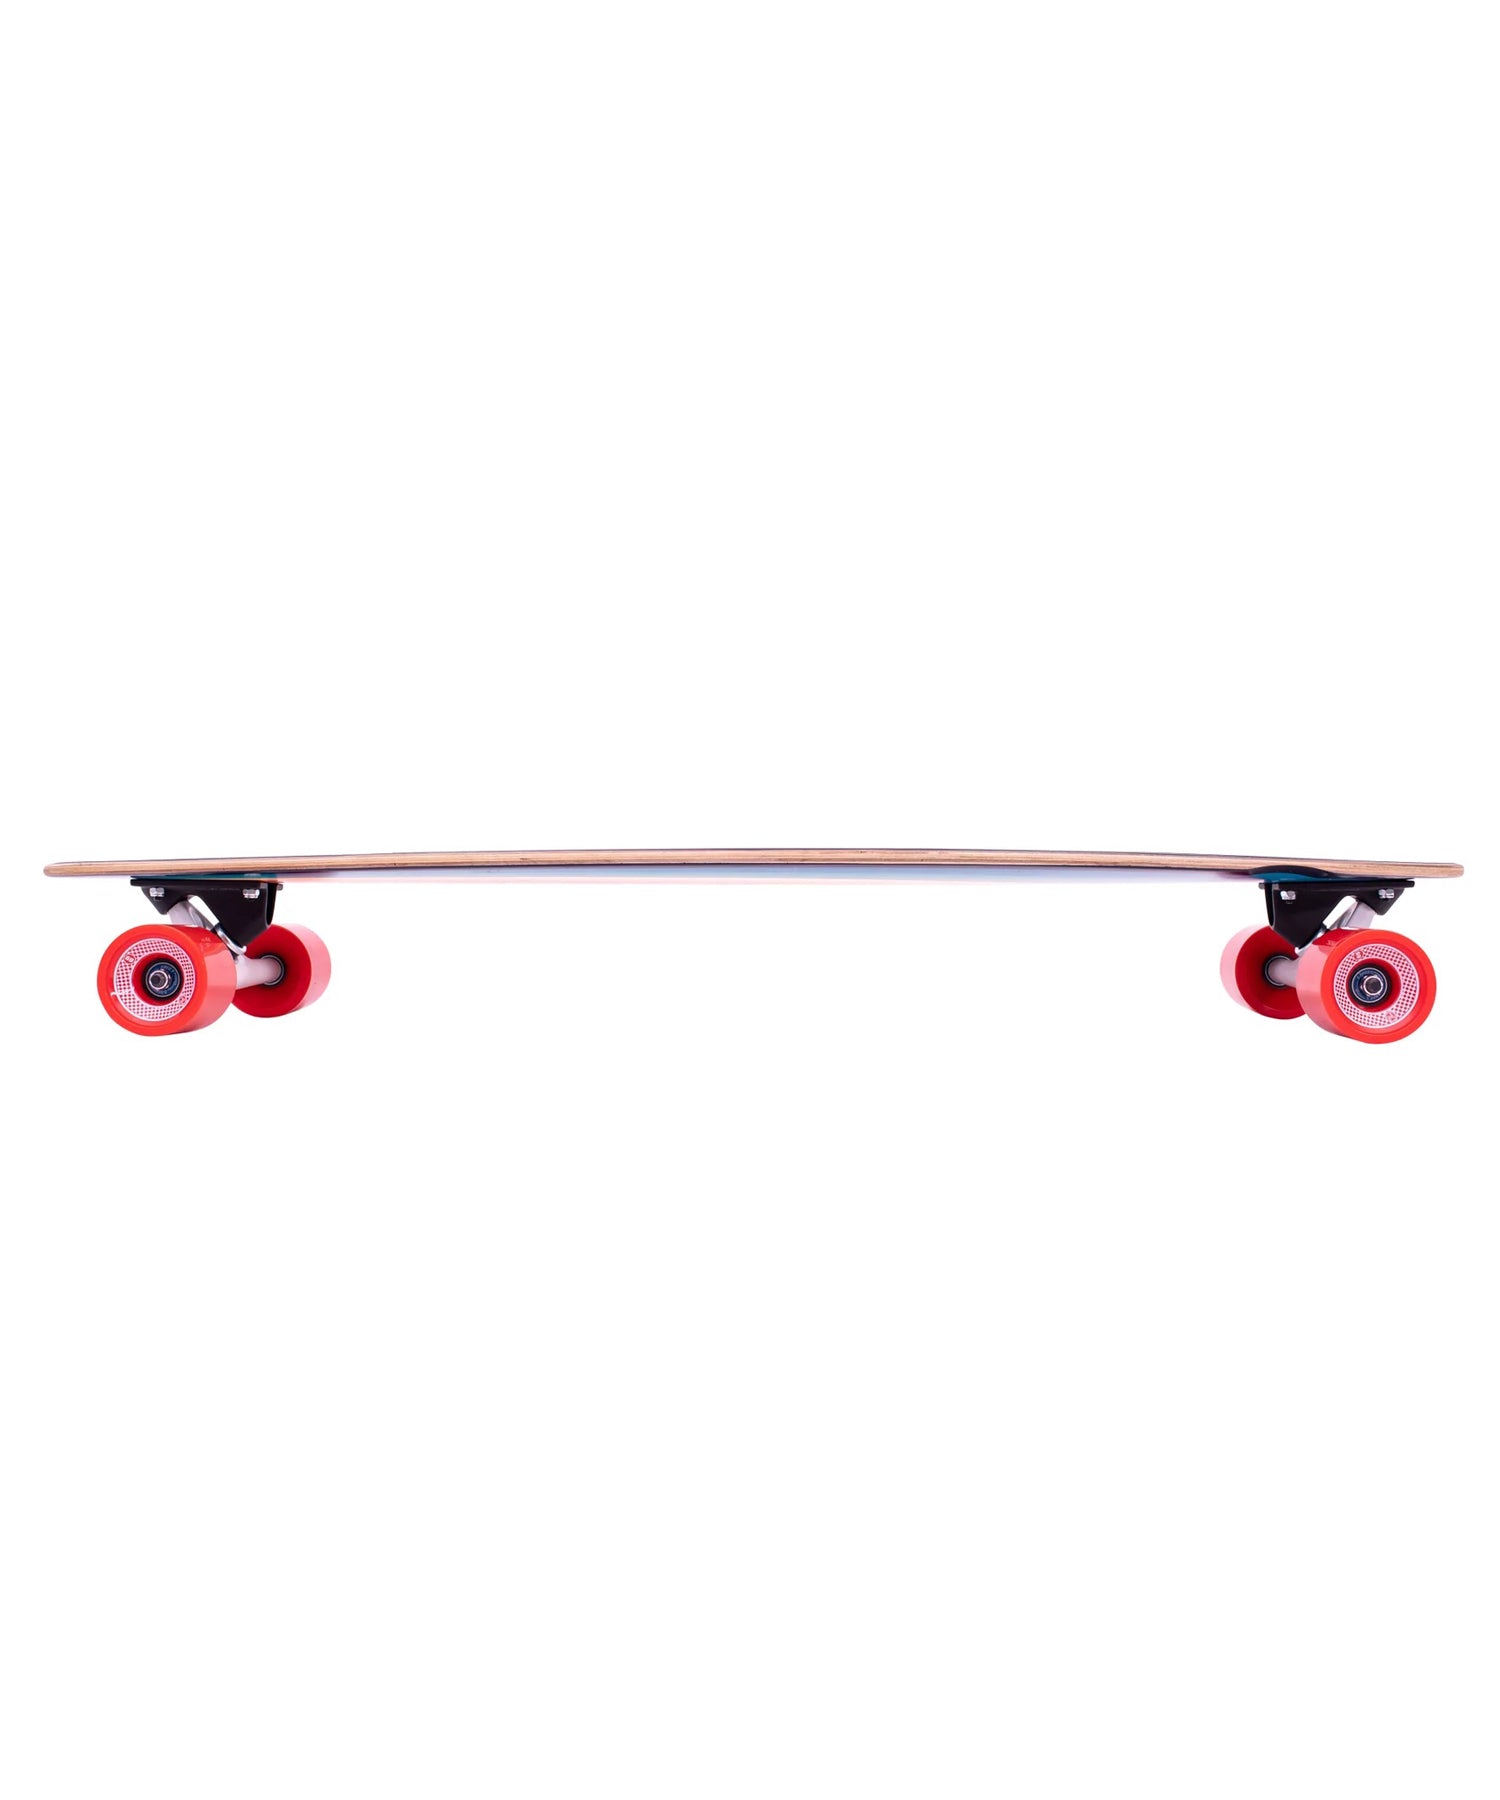 z-flex-surfagogo-longboard-forma pintail-medida 38"-ruedas-ejes-tabla-todo a punto para patinar-ruedas de 69 mm-tabla de 7 capas de arce.